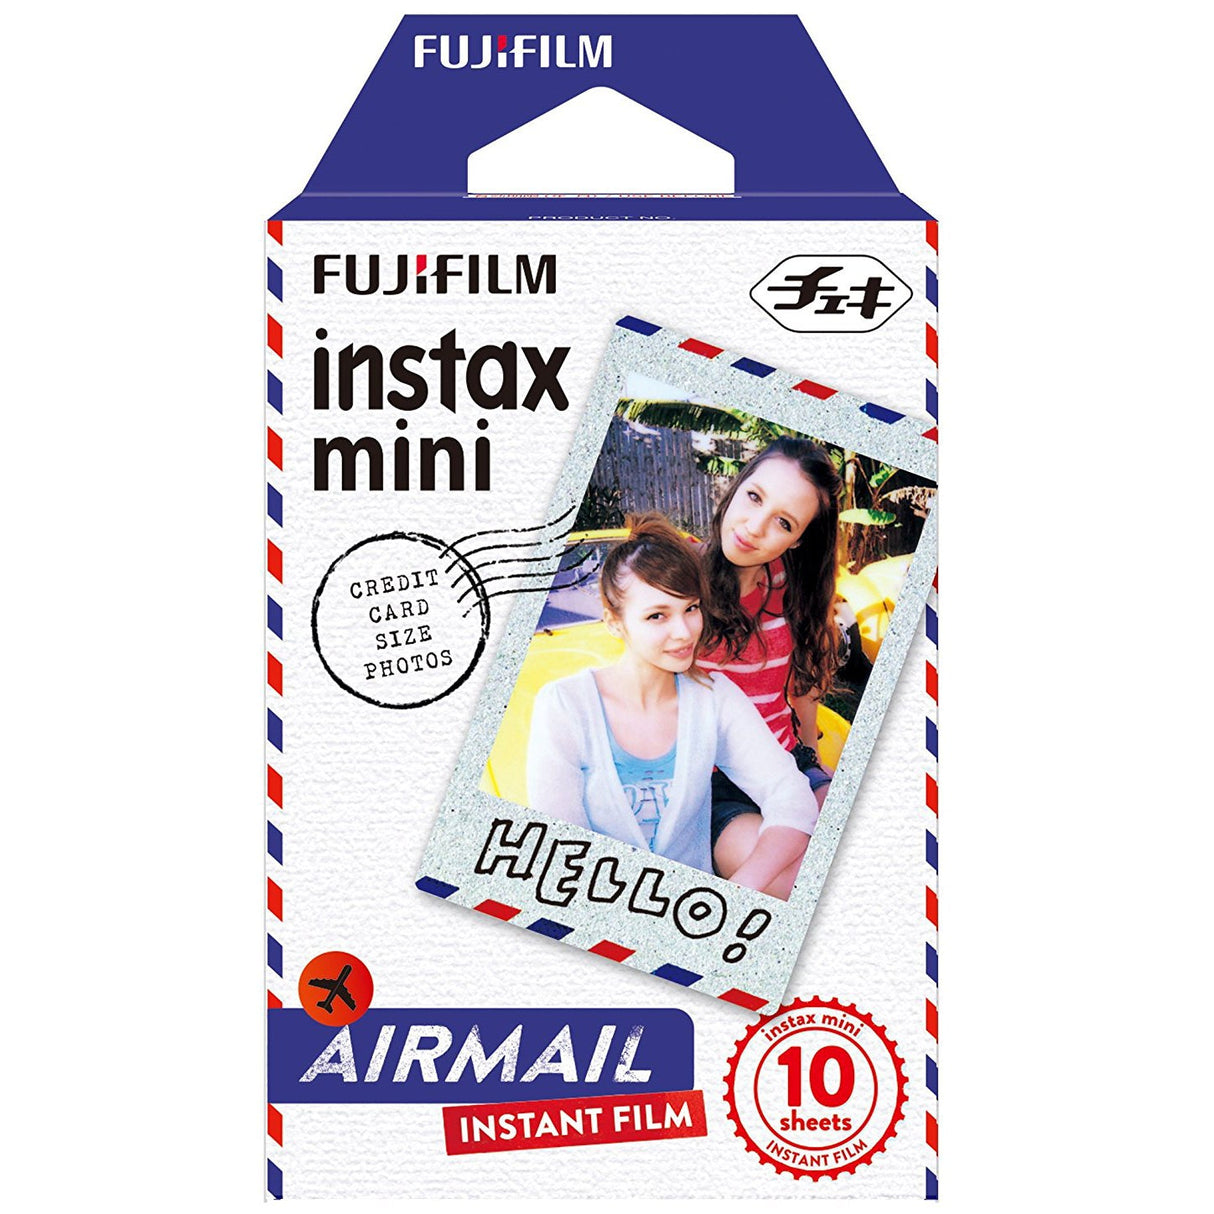 Fujifilm Instax Mini 10X1 Airmail instant Film